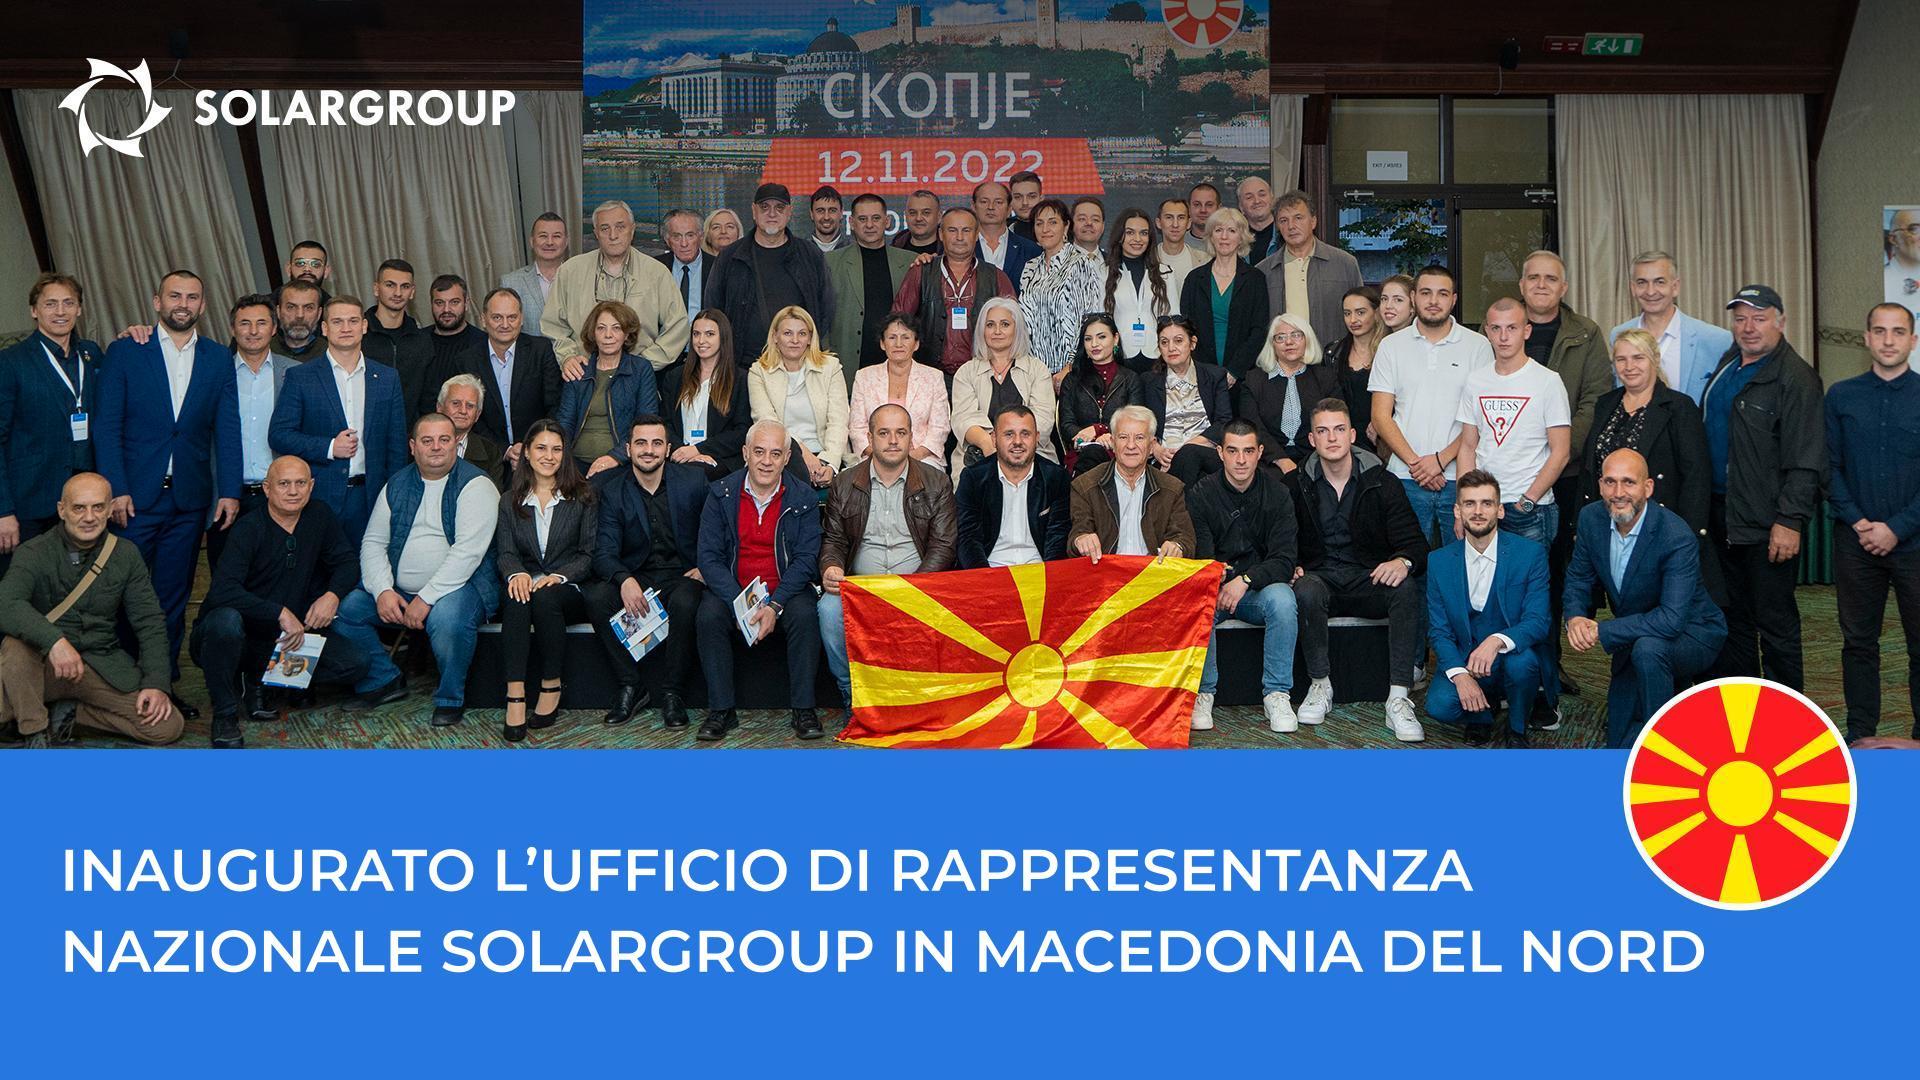 Conferenza SOLARGROUP in Macedonia del Nord: i momenti salienti